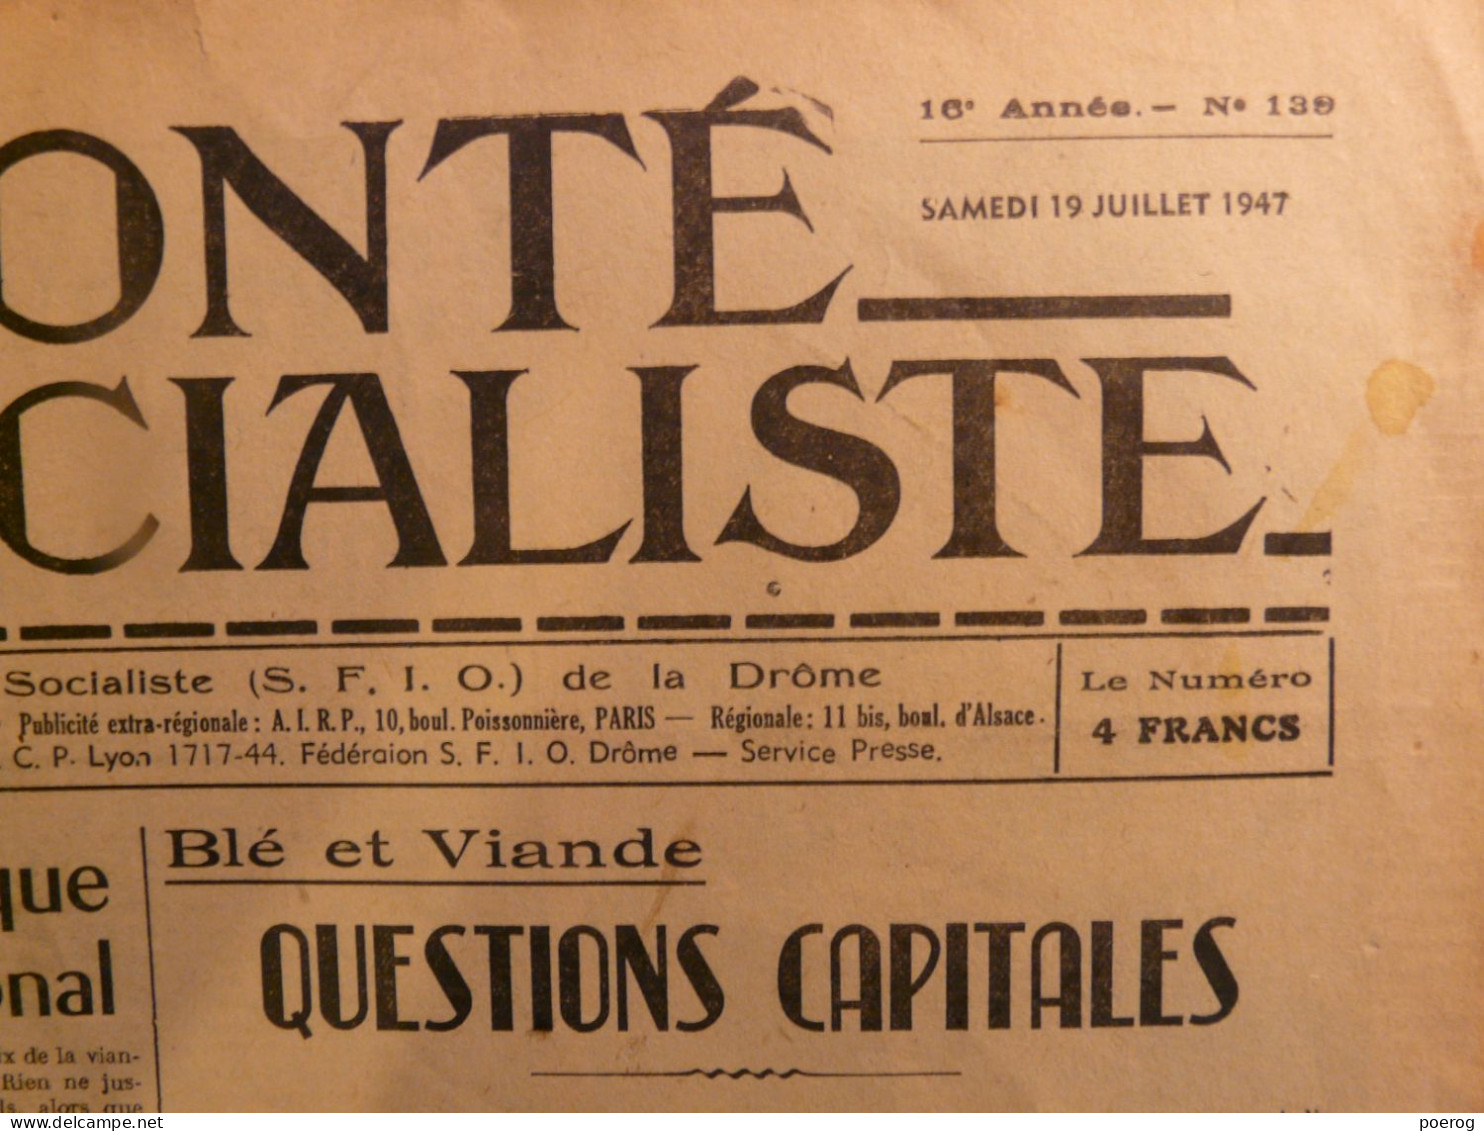 LA VOLONTE SOCIALISTE Du 19 JUILLET 1947 - BLE ET VIANDE QUESTIONS CAPITALES - SFIO DE LA DROME - SYNDICALISME - General Issues